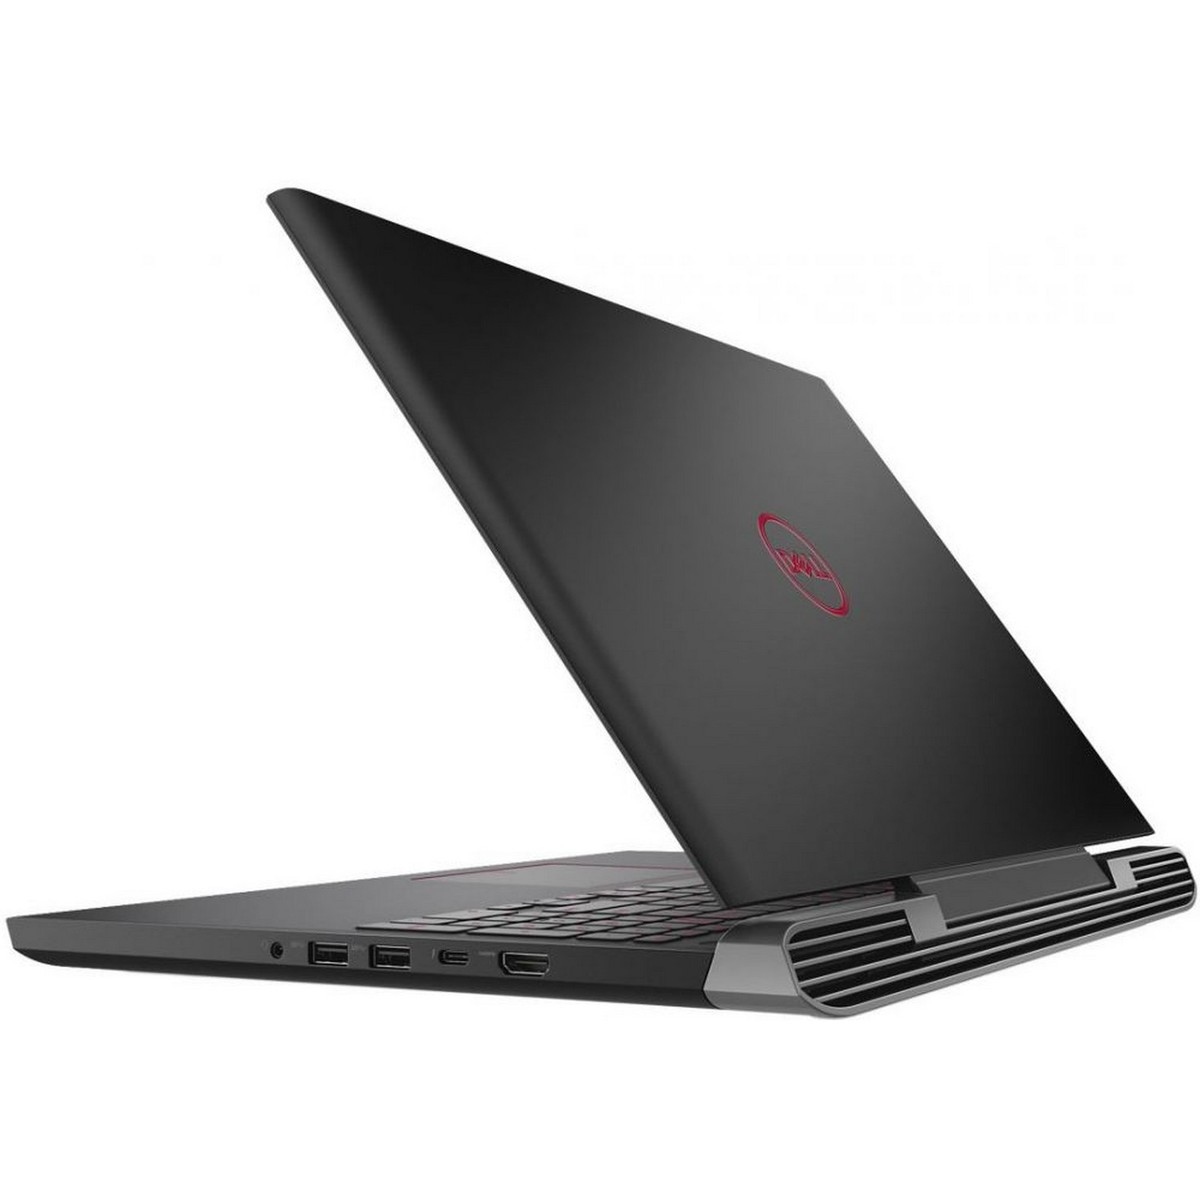 Dell Gaming Notebook 7577-INS1125, Core i5-7300HQ, 15.6 inch FHD, 1TB, 8GB RAM, 4GB VGA-GTX1050, English-Arabic keyboard,Windows10,Black